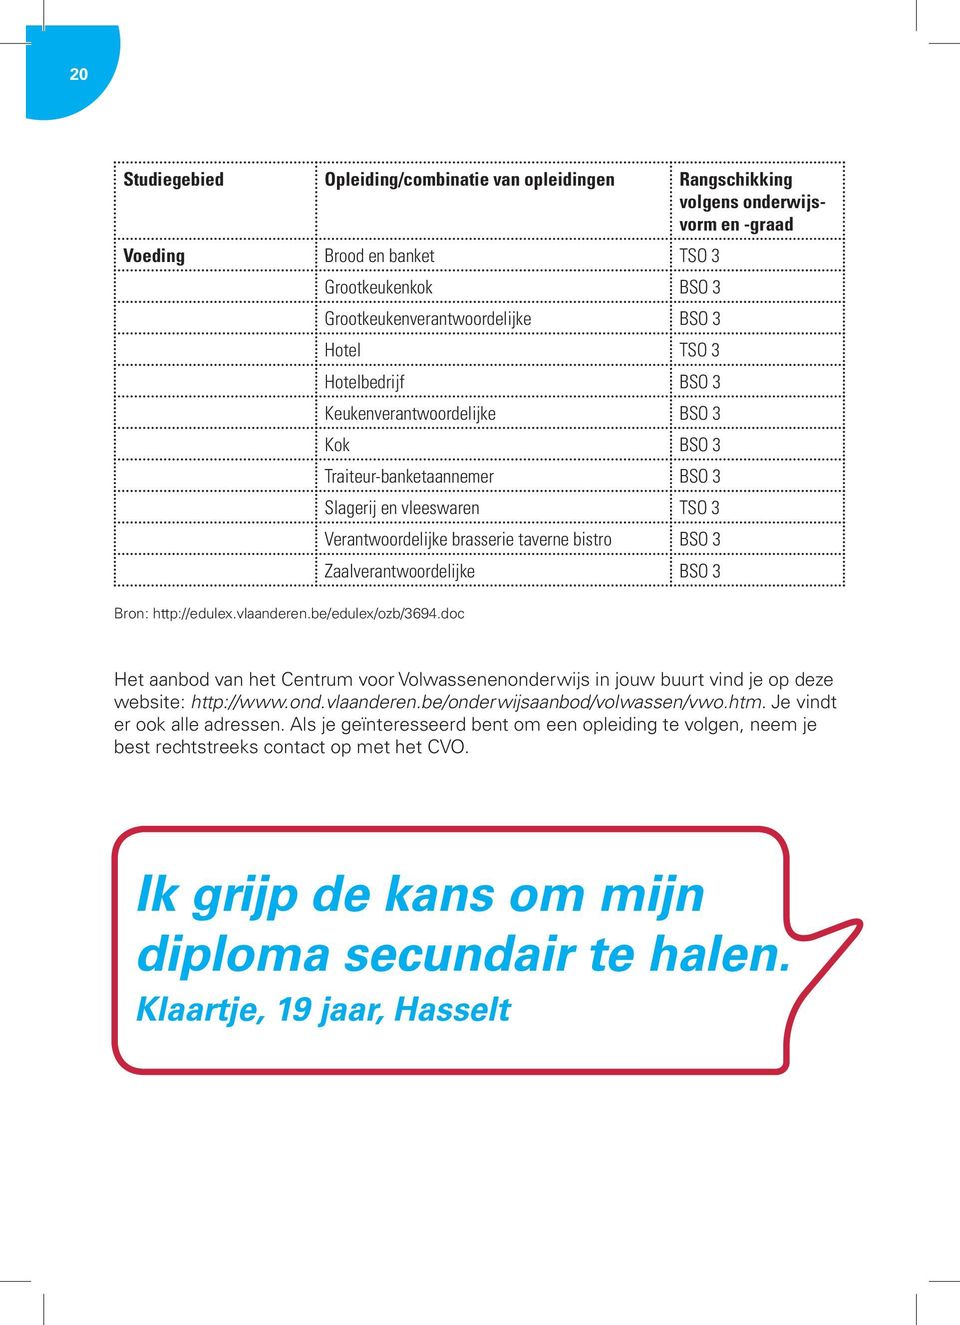 Bron: http://edulex.vlaanderen.be/edulex/ozb/3694.doc Het aanbod van het Centrum voor Volwassenenonderwijs in jouw buurt vind je op deze website: http://www.ond.vlaanderen.be/onderwijsaanbod/volwassen/vwo.